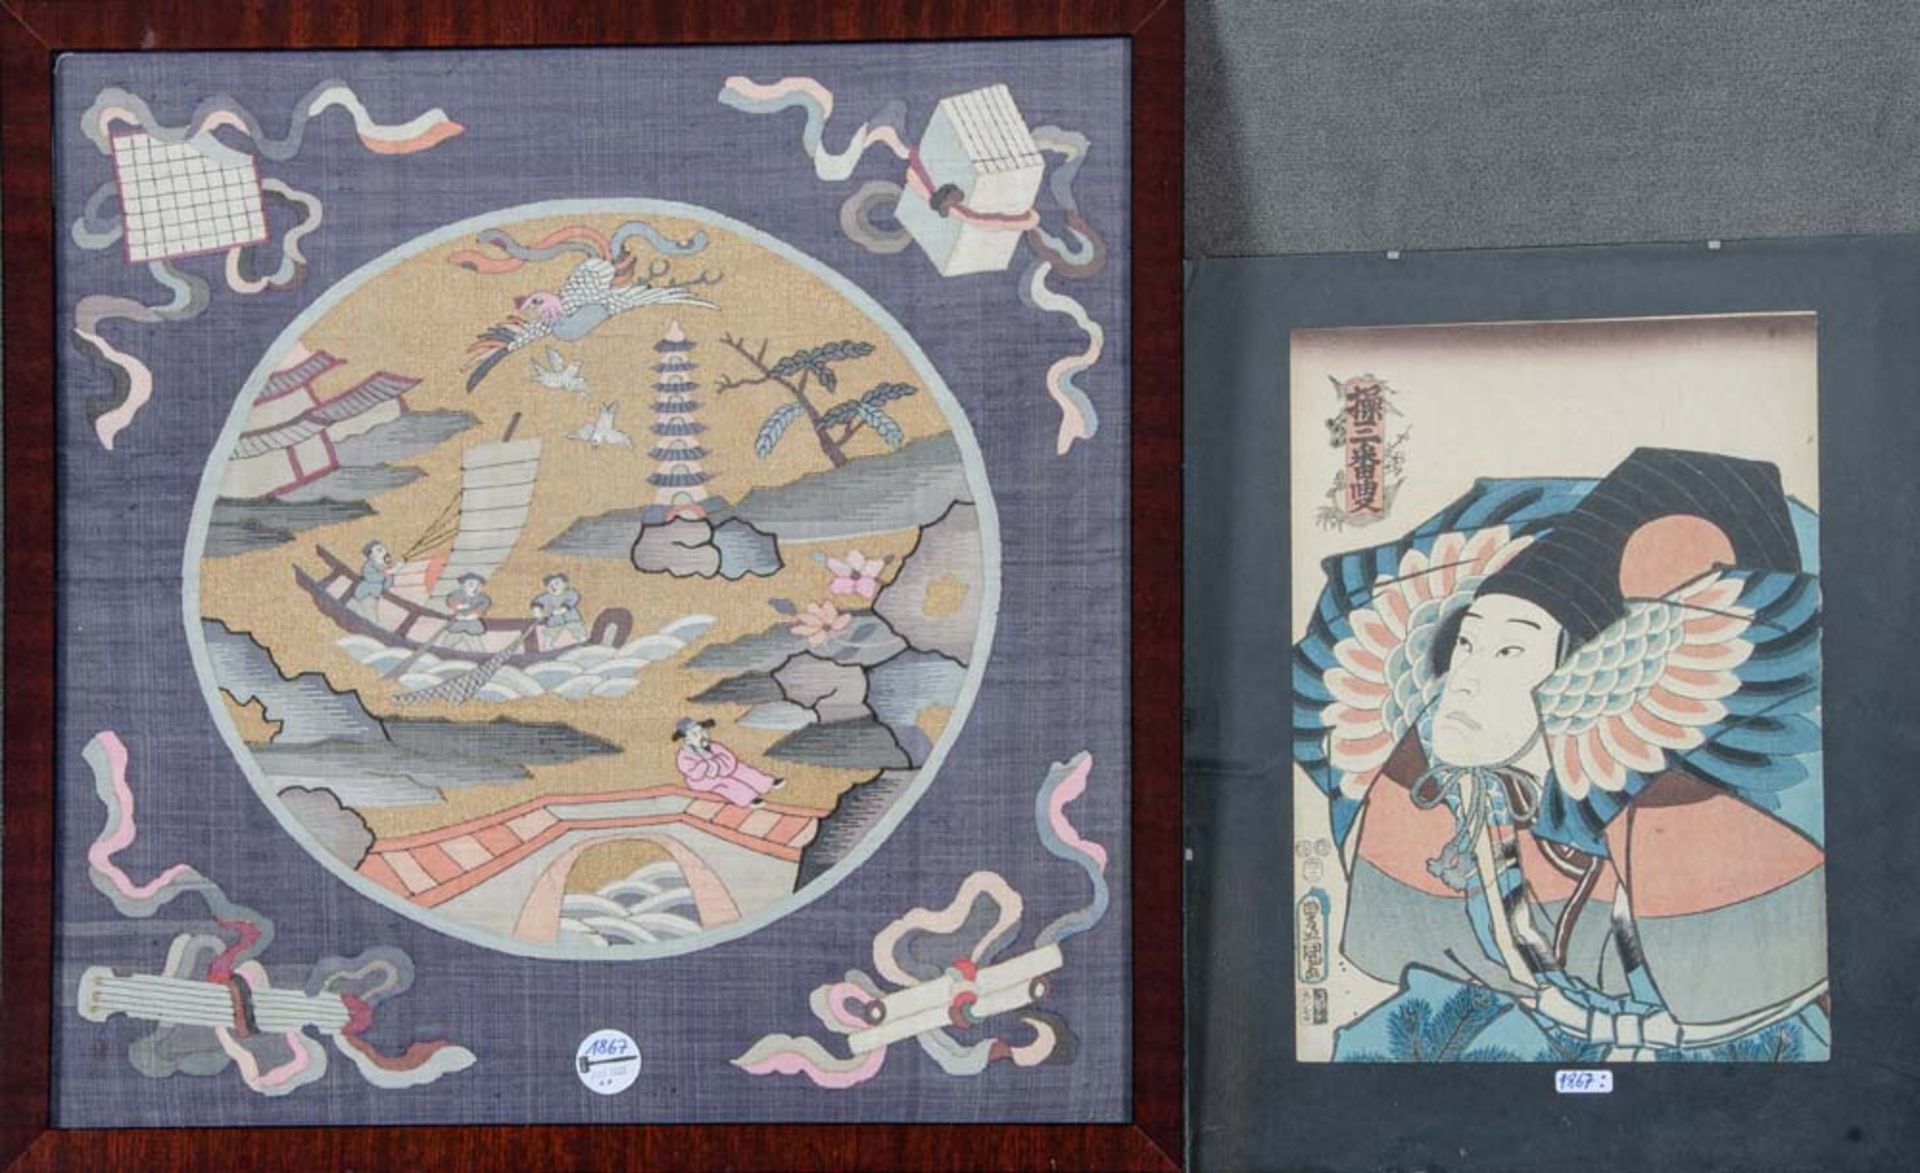 Stoffbild. Asien. Bunt bemalt mit Figuren, Tieren, Gebäude, 52 x 52 cm; dazu Farbholzschnitt. Japan.